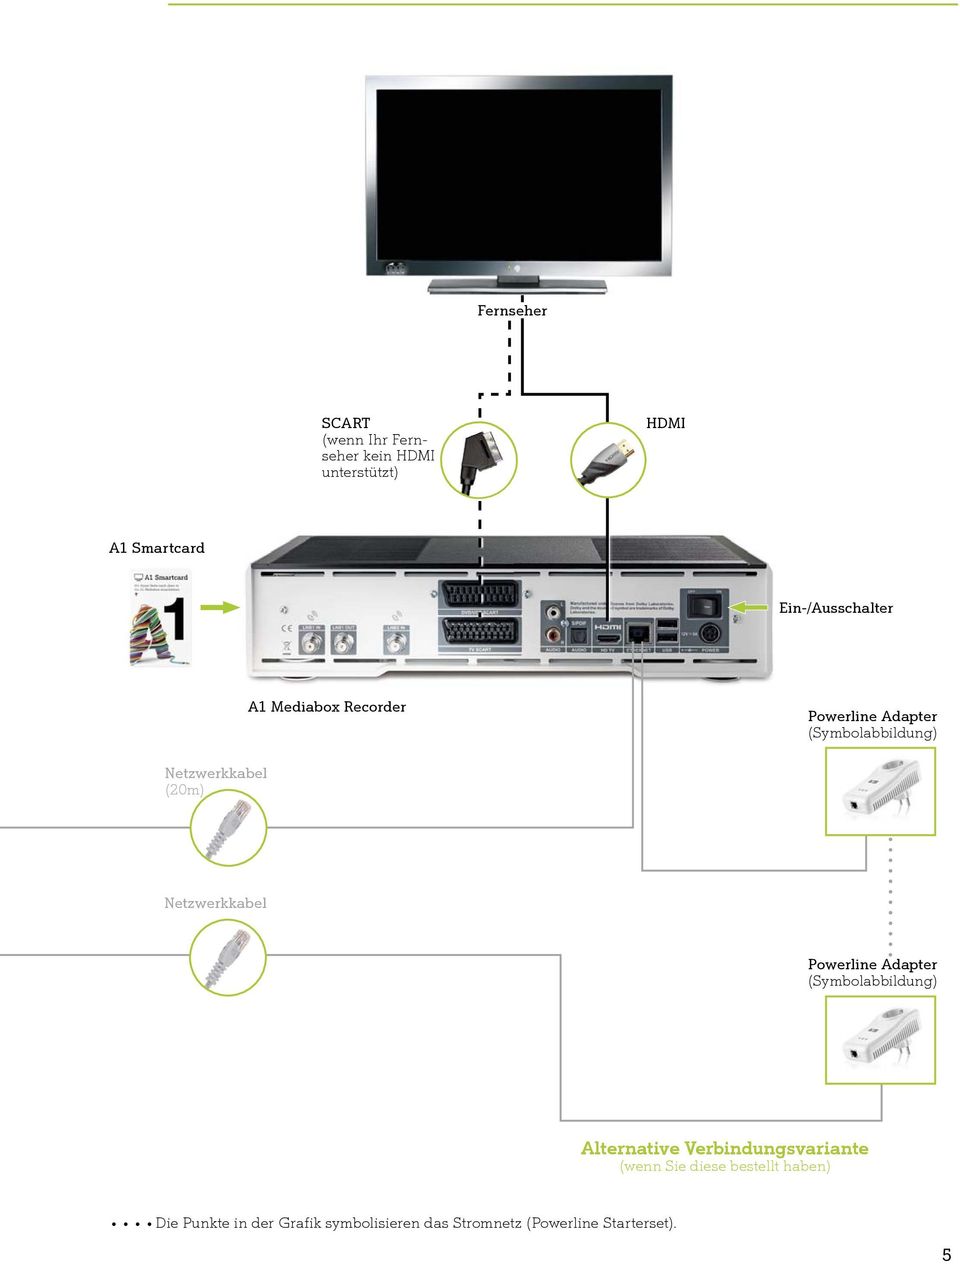 (20m) Netzwerkkabel Powerline Adapter (Symbolabbildung) Alternative Verbindungsvariante